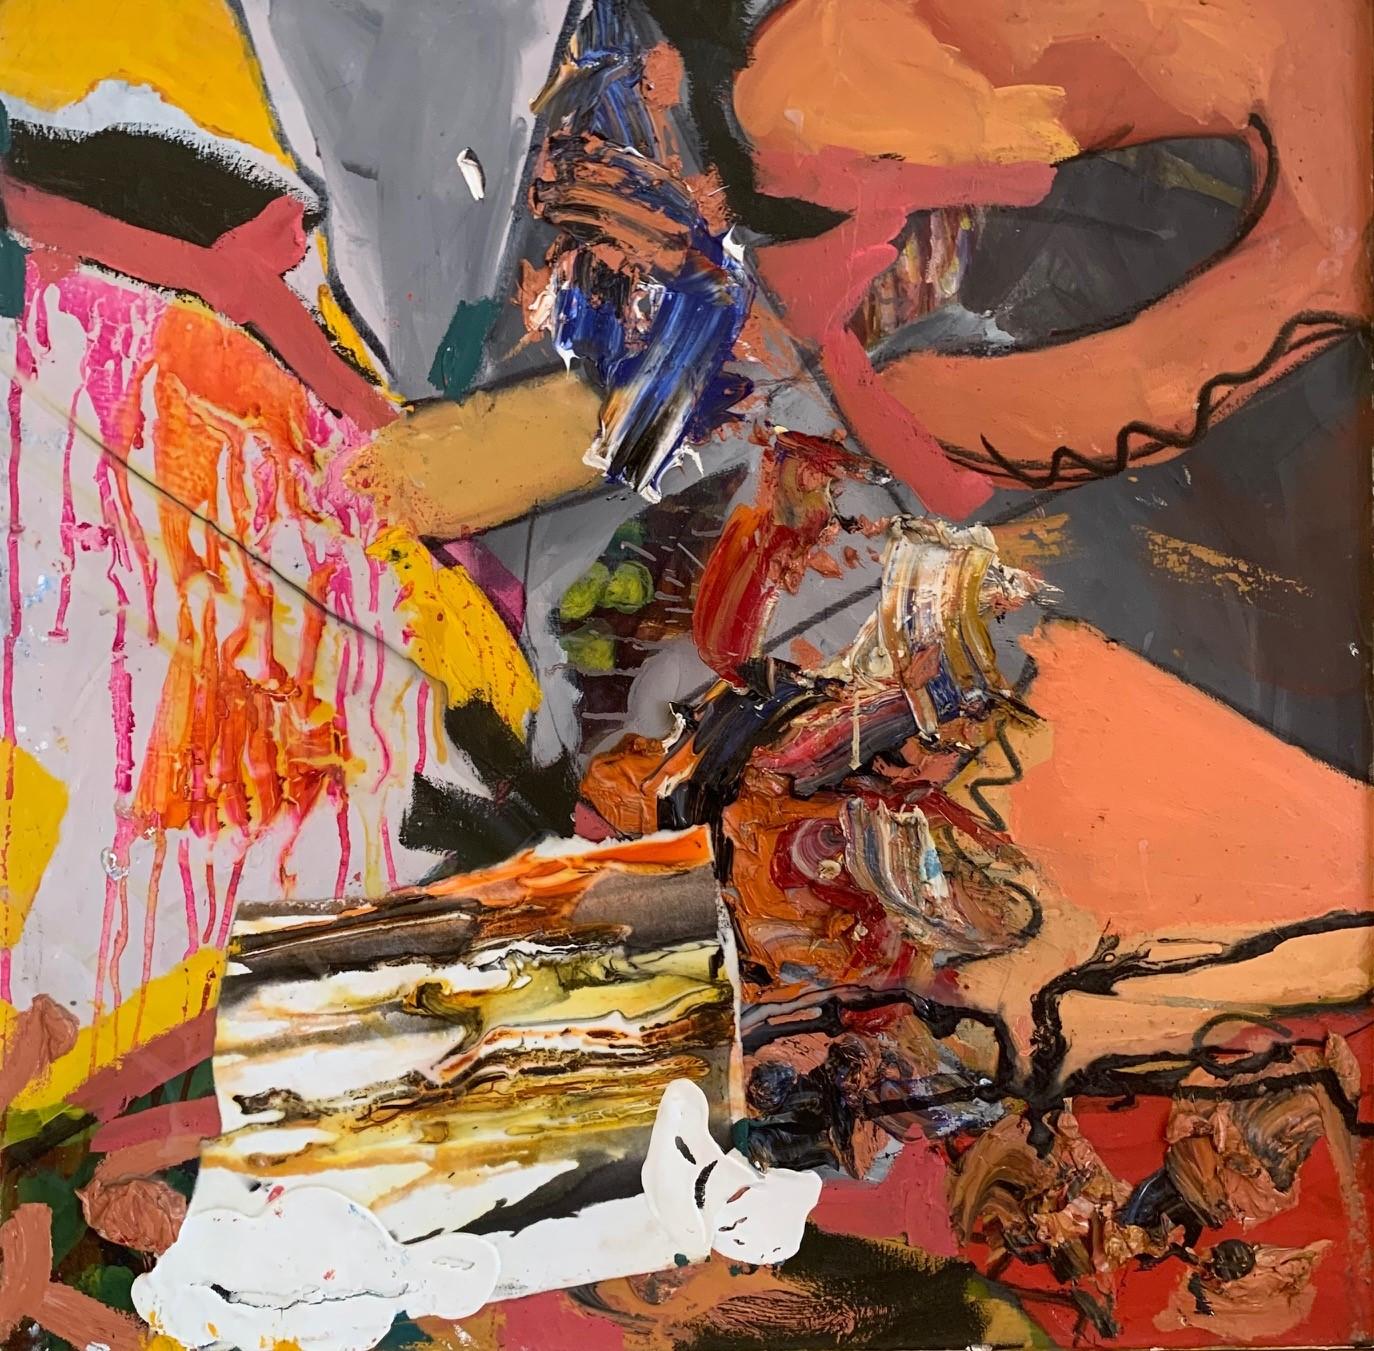 Original zeitgenössisches abstraktes Original  Mixed Media Orang Gelb und Grau auf Leinwand   (Abstrakt), Mixed Media Art, von Steven H. Rehfeld